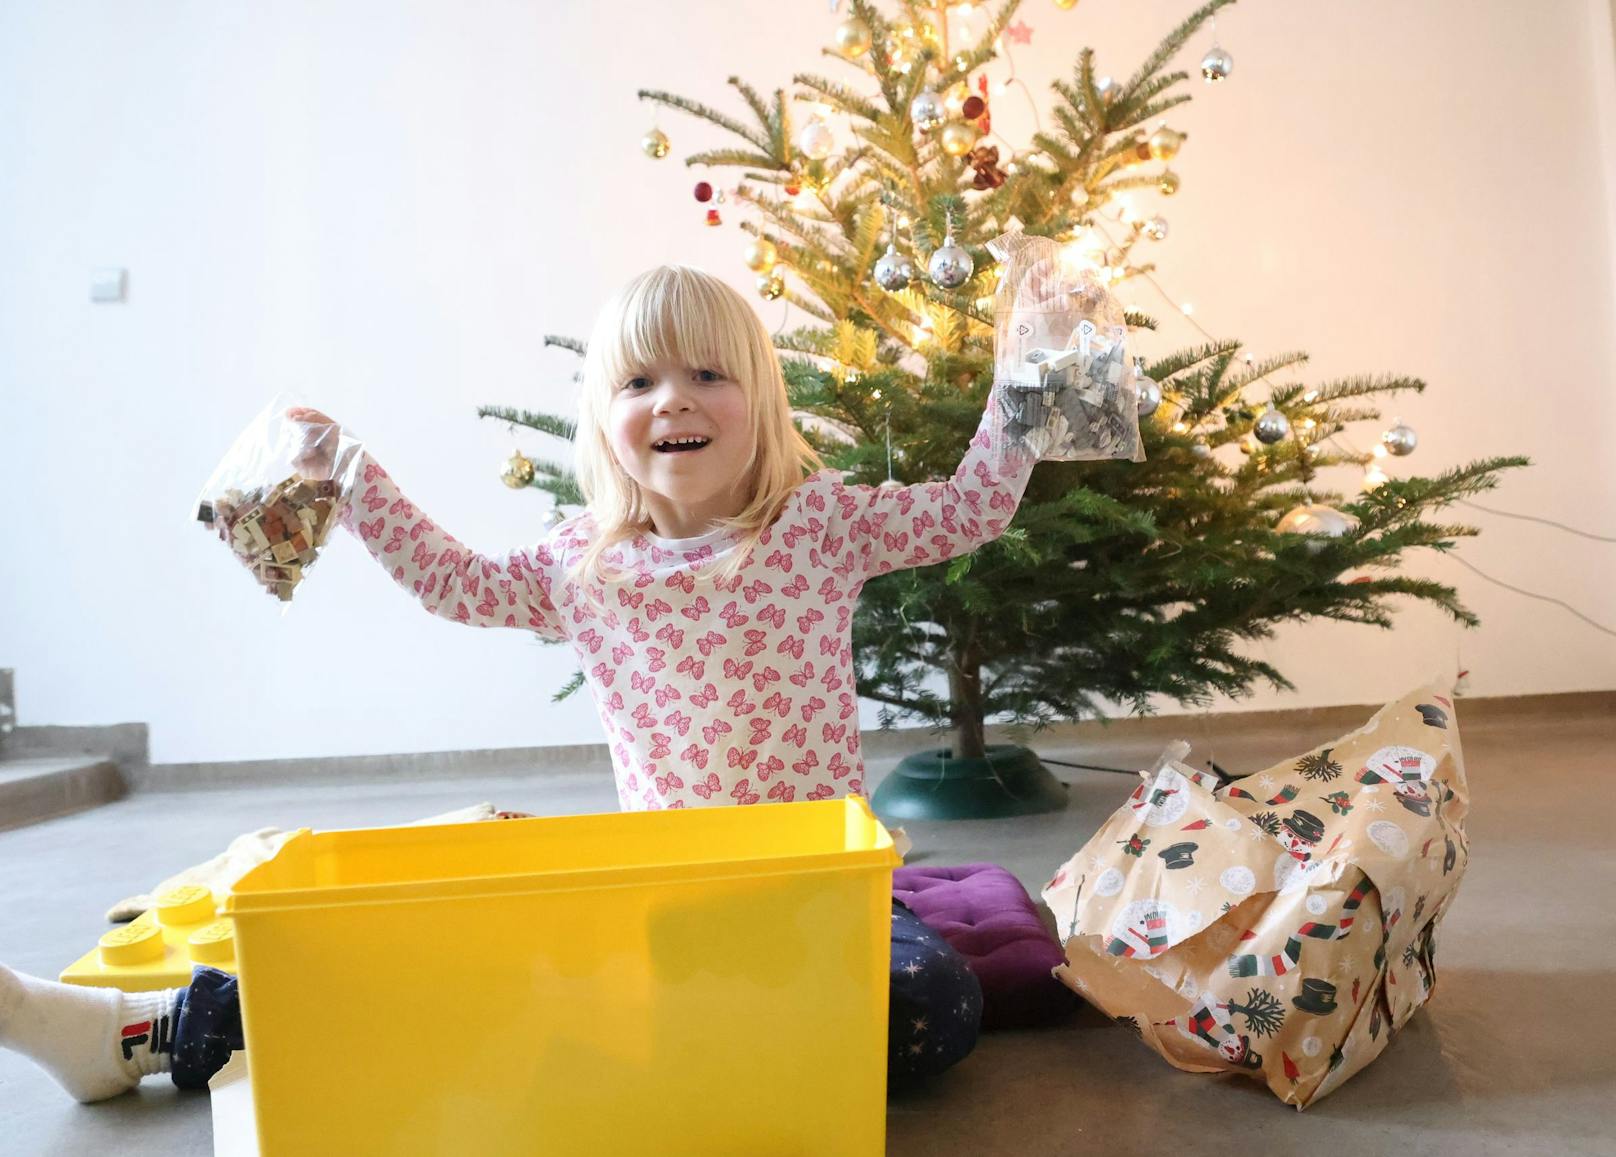 "Juhu, ein Lego!": Die dreijährige Victoria durfte ihr Wichtel-Paket auspacken – und die Freude war groß.